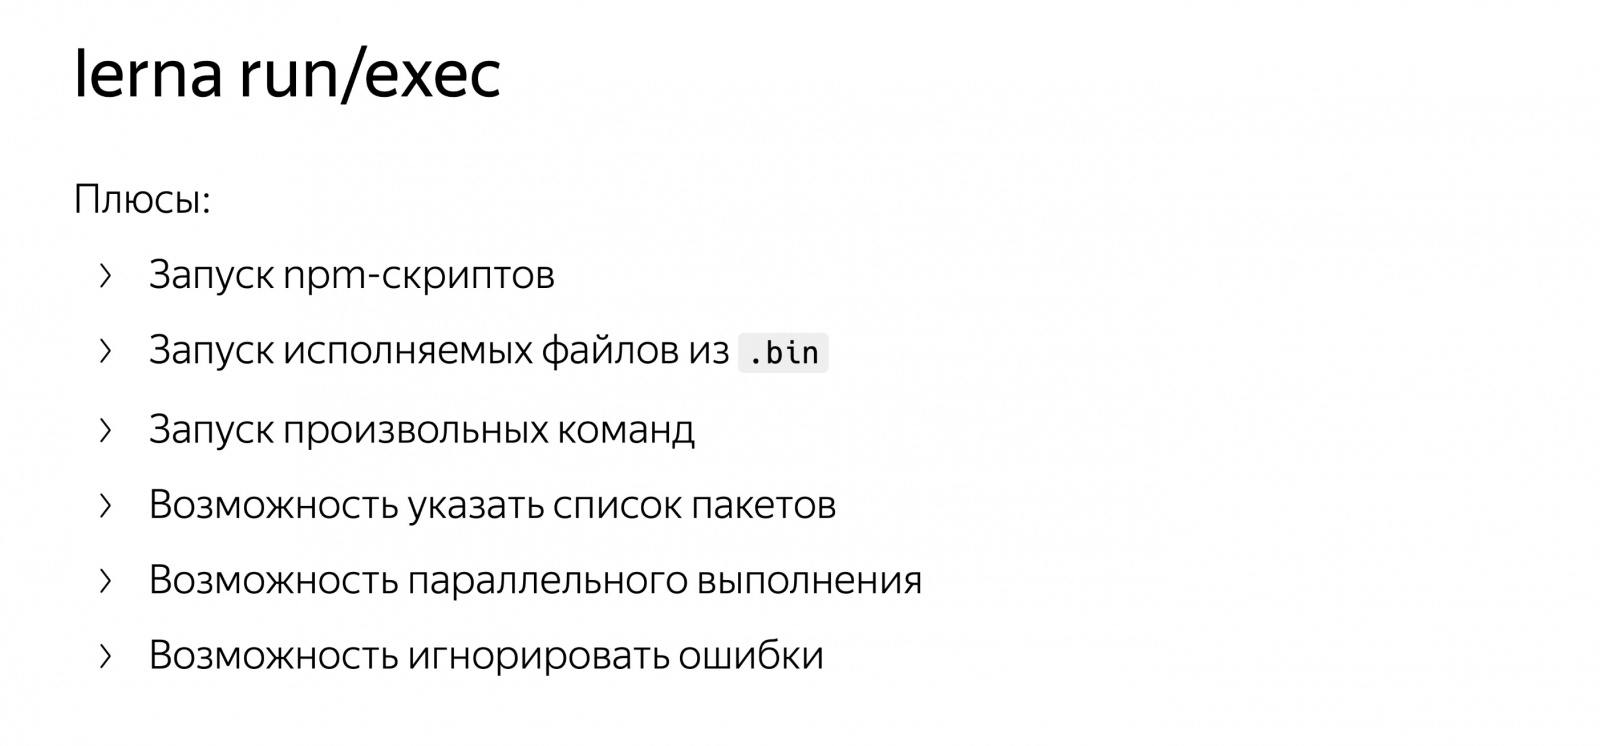 Разработка в монорепозитории. Доклад Яндекса - 25